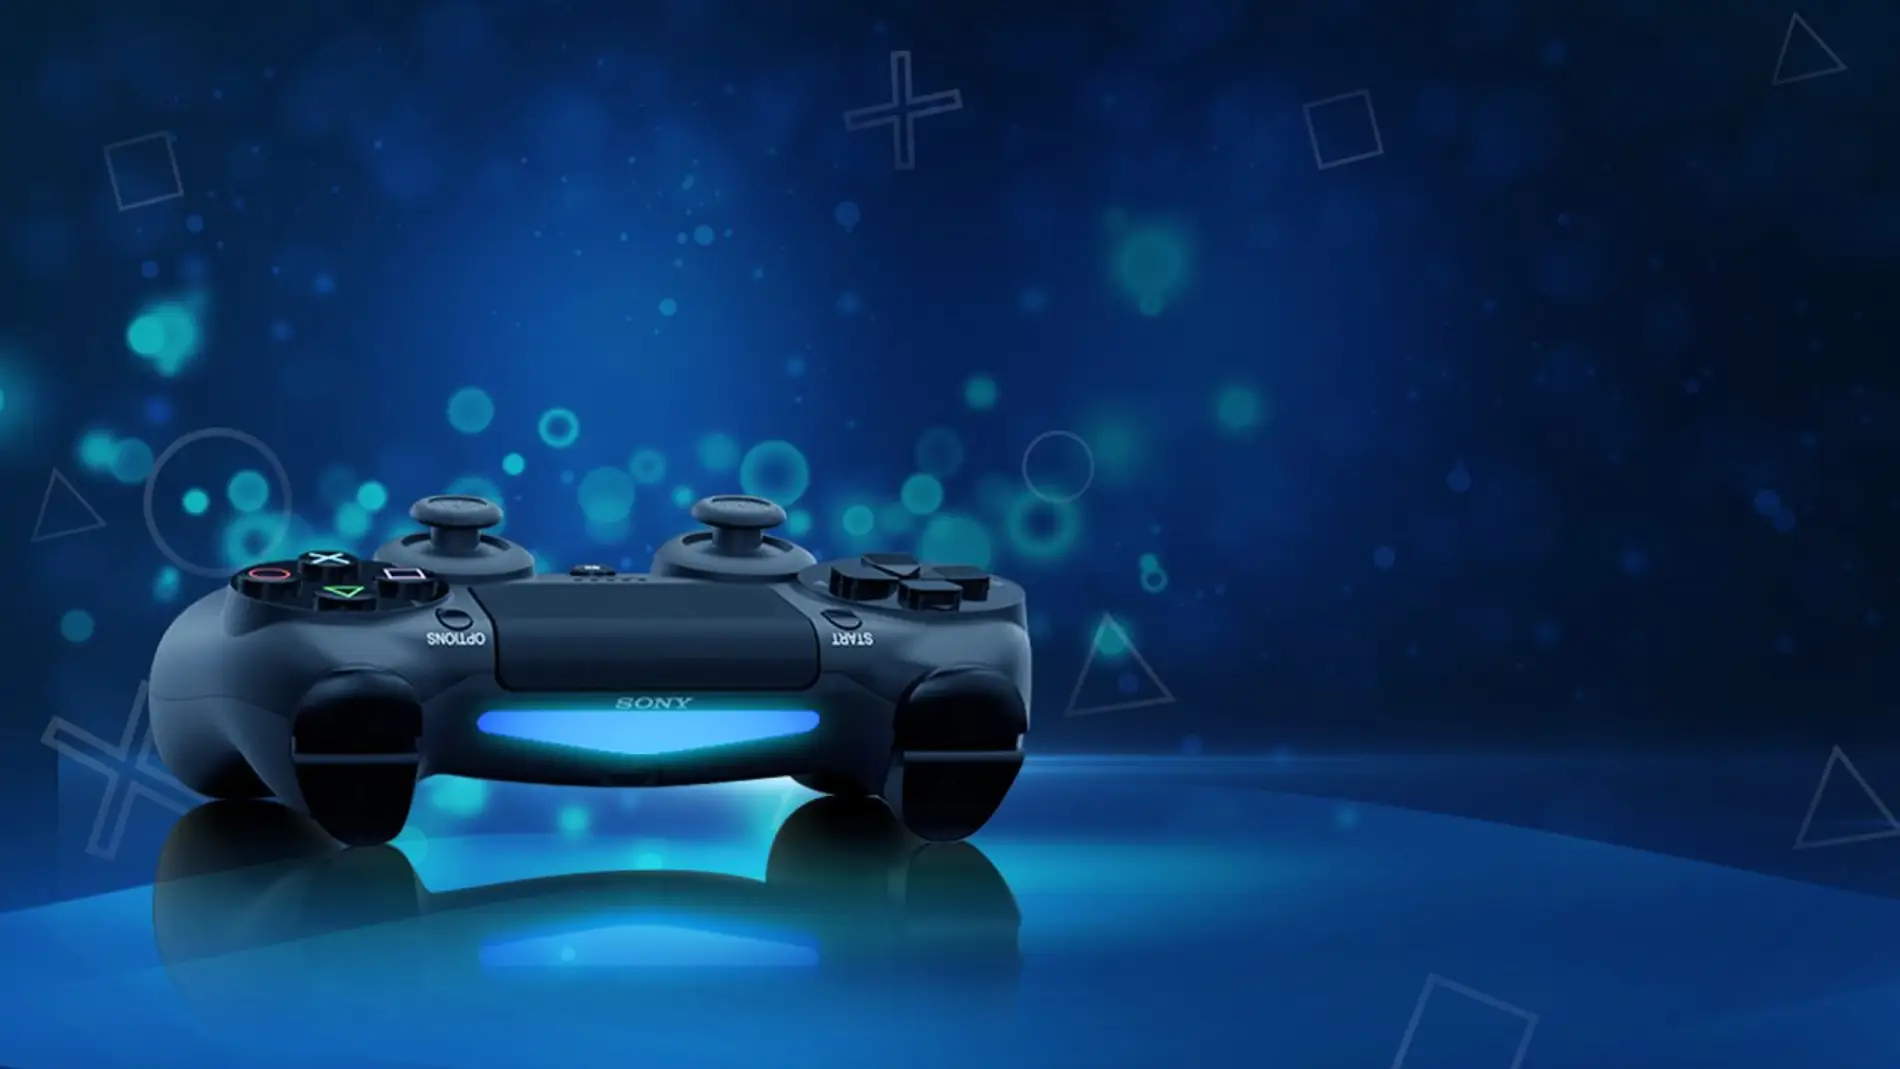 Una oración guión carga PS5: El DualShock 5 podría contar con una pantalla según una nueva patente  - VÍDEO